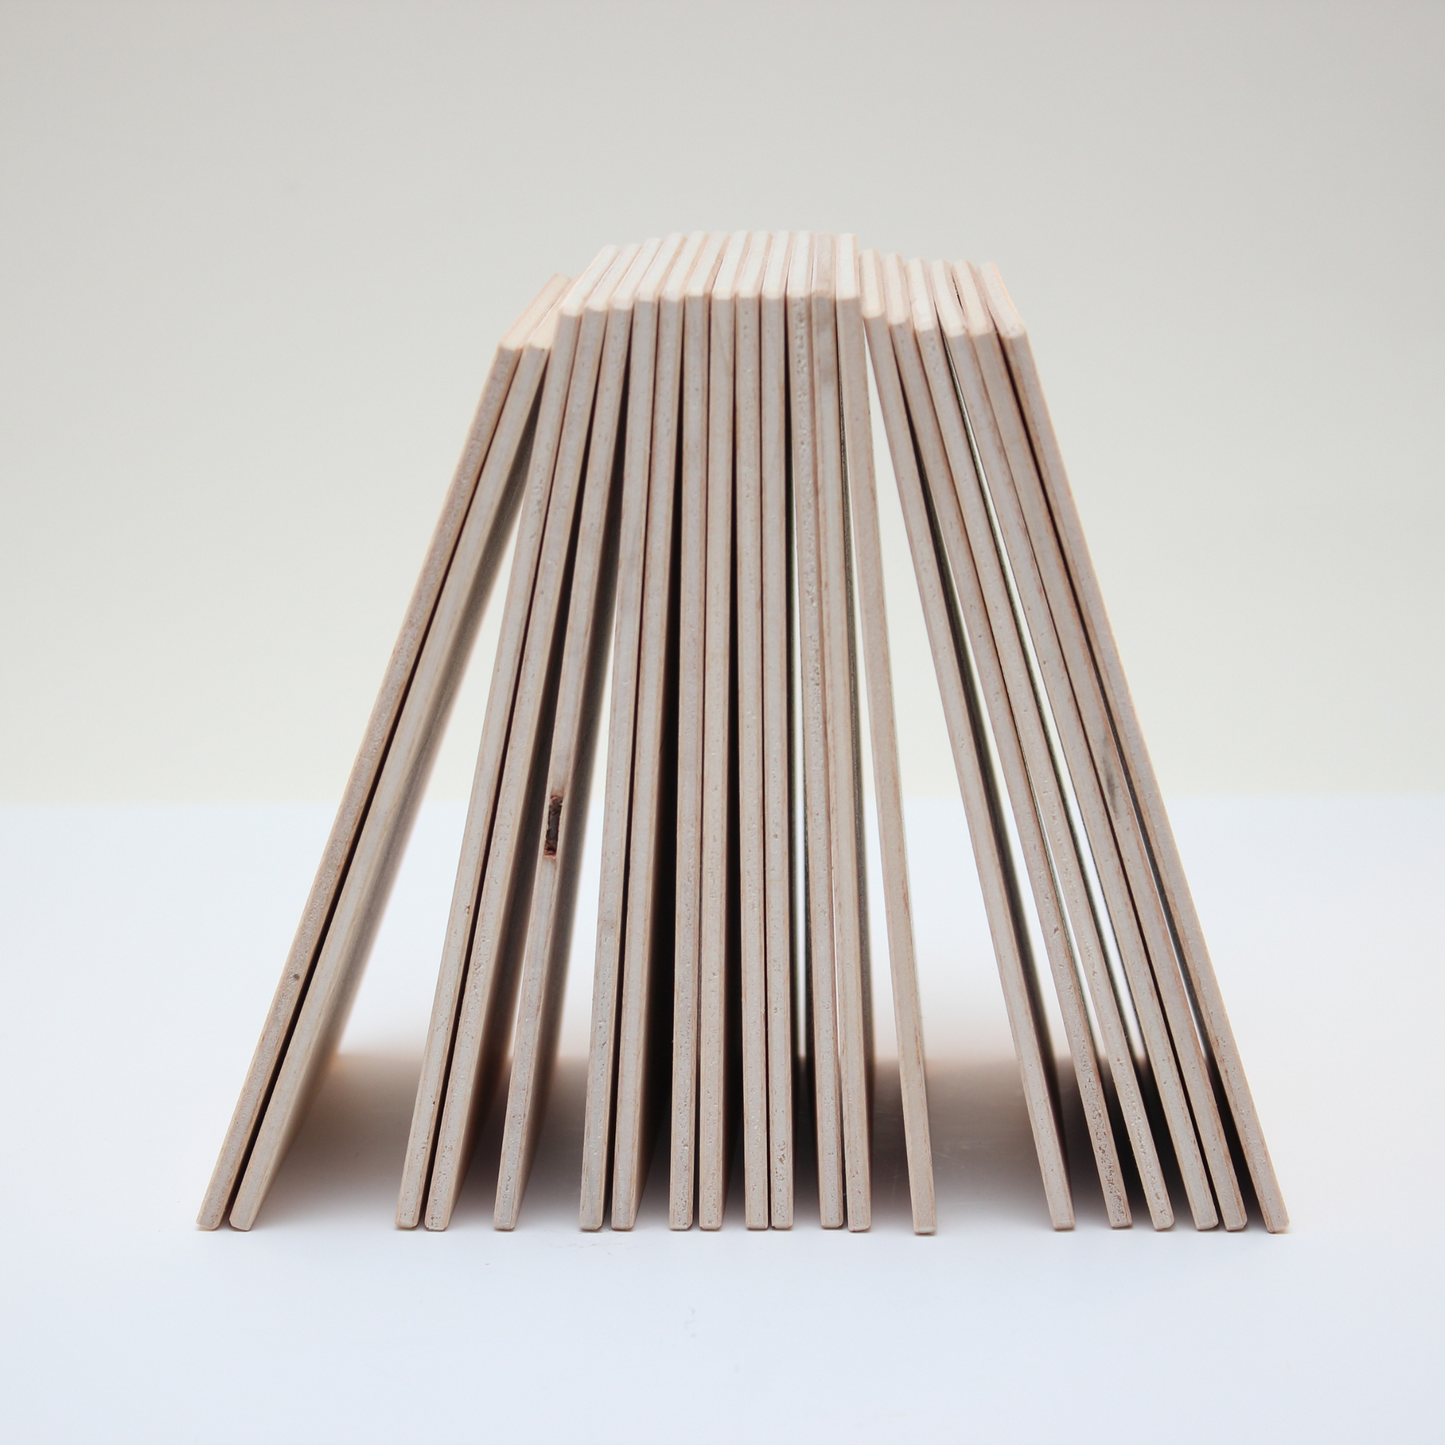 Holzpostkarte, Linoldruck, Weil wegen Liebe und so (14,7x10,5cm) - S'MADL MACHT'S